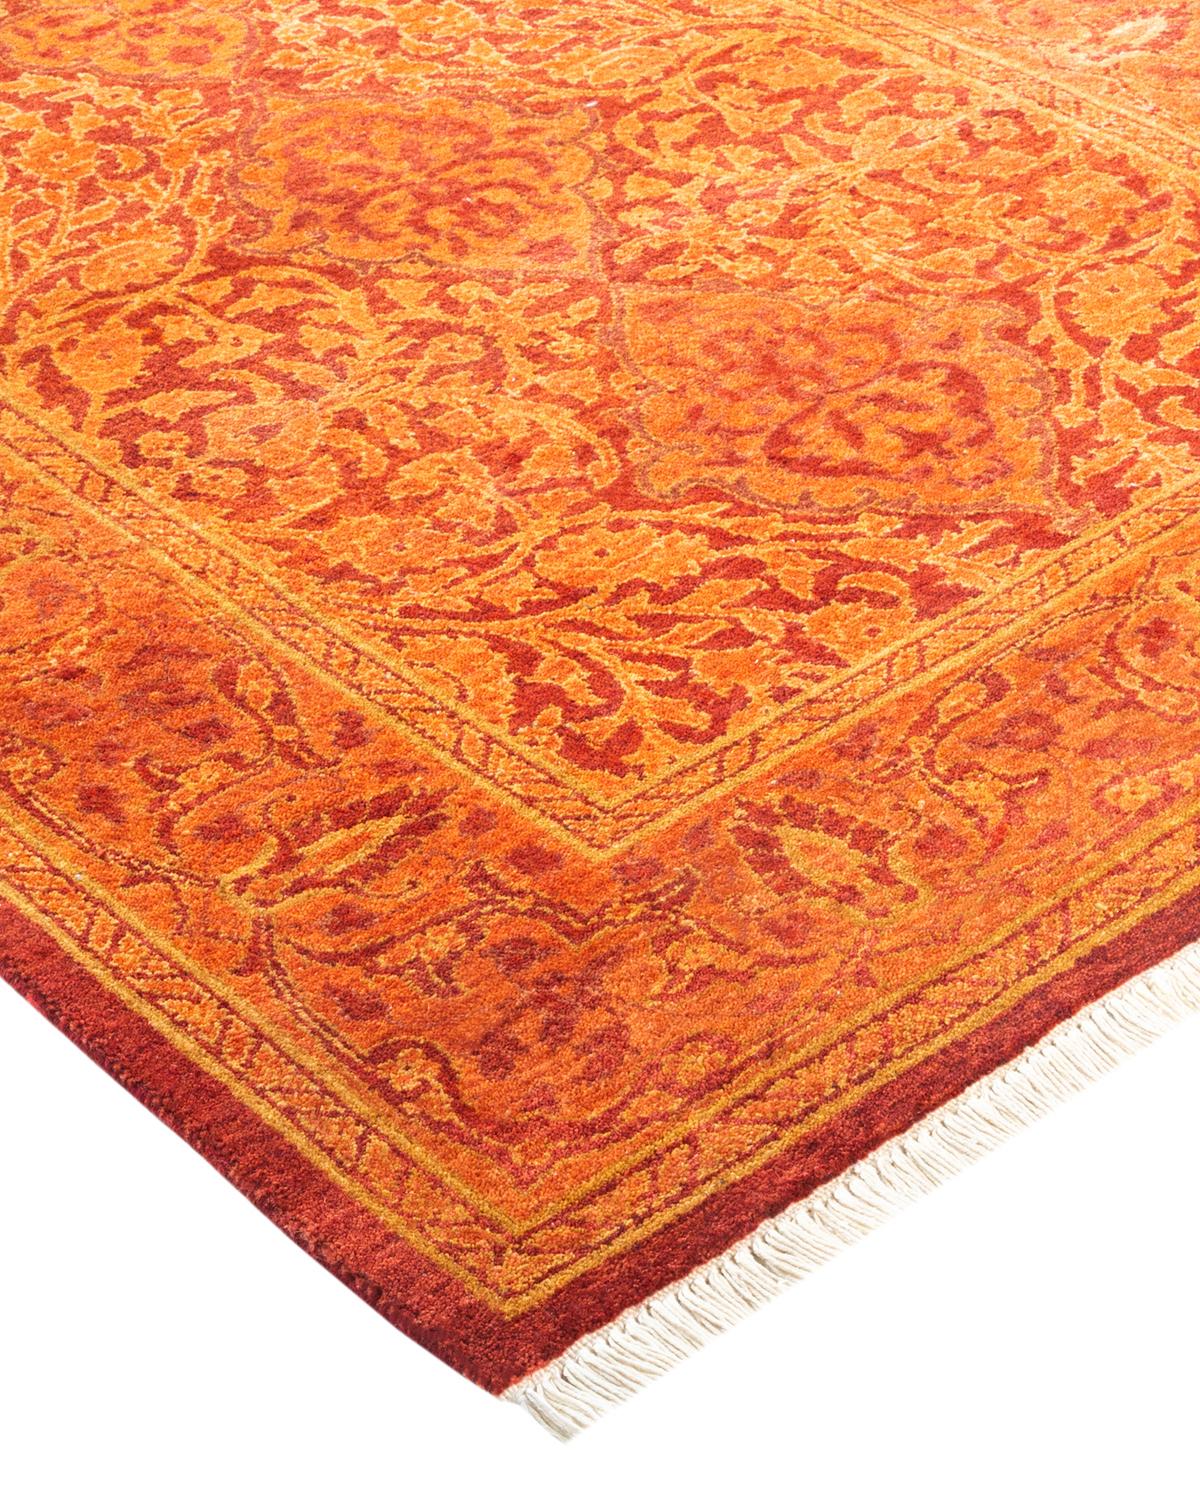 Die Teppiche der Mogul Collection bringen mit ihren dezenten Farben und Allover-Mustern zeitlose Raffinesse in jeden Raum. Beeinflusst von einem Spektrum türkischer, indischer und persischer Designs, lassen die Kunsthandwerker, die diese